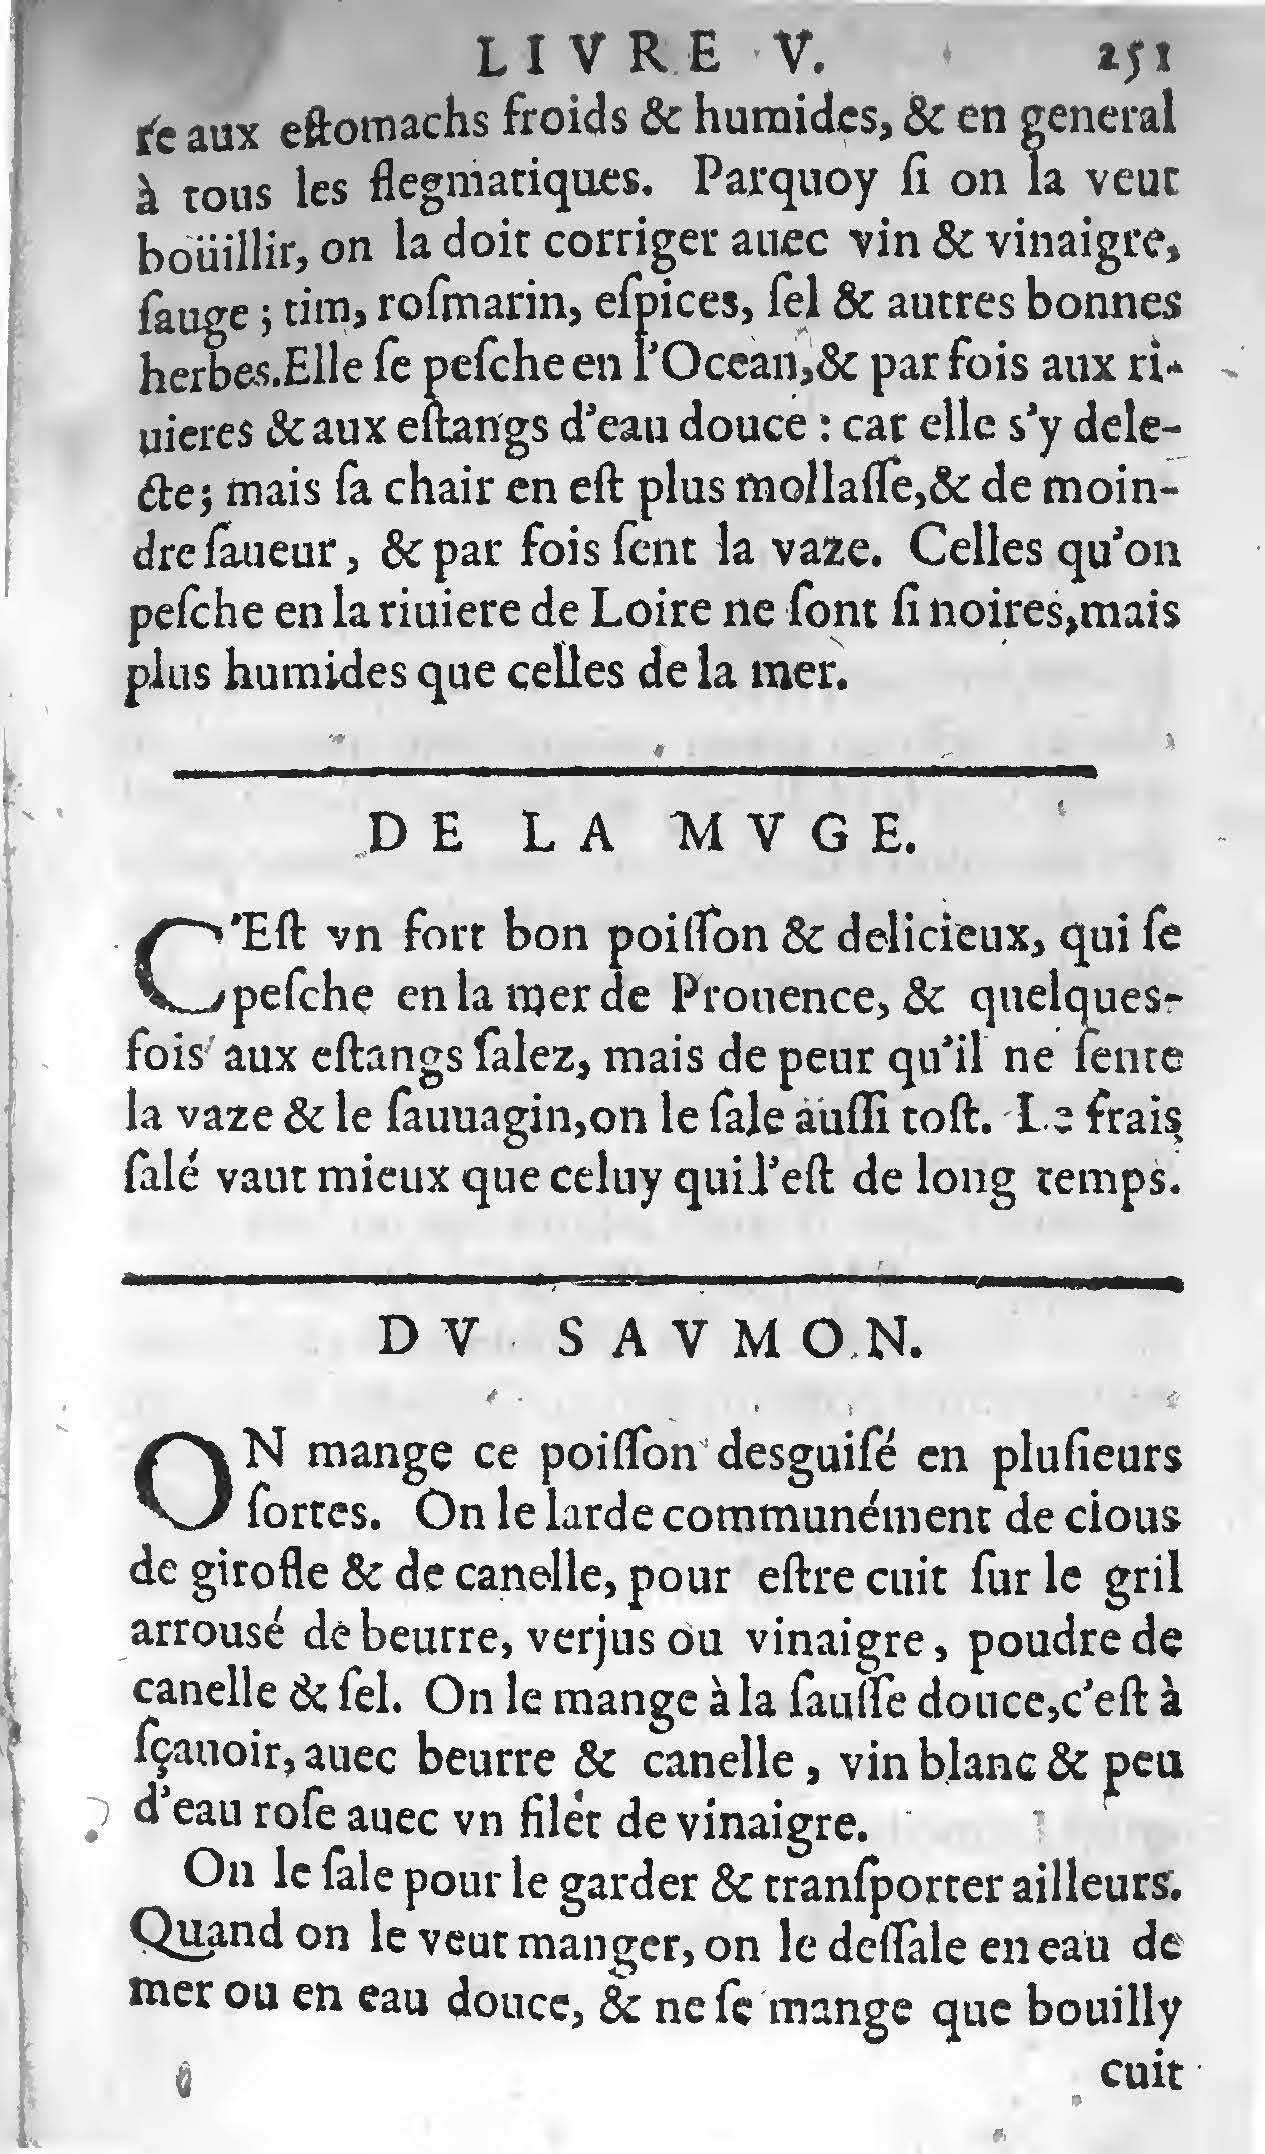 1607 Étienne Servain et Jean Antoine Huguetan - Trésor de santé ou ménage de la vie humaine - BIU Santé_Page_271.jpg